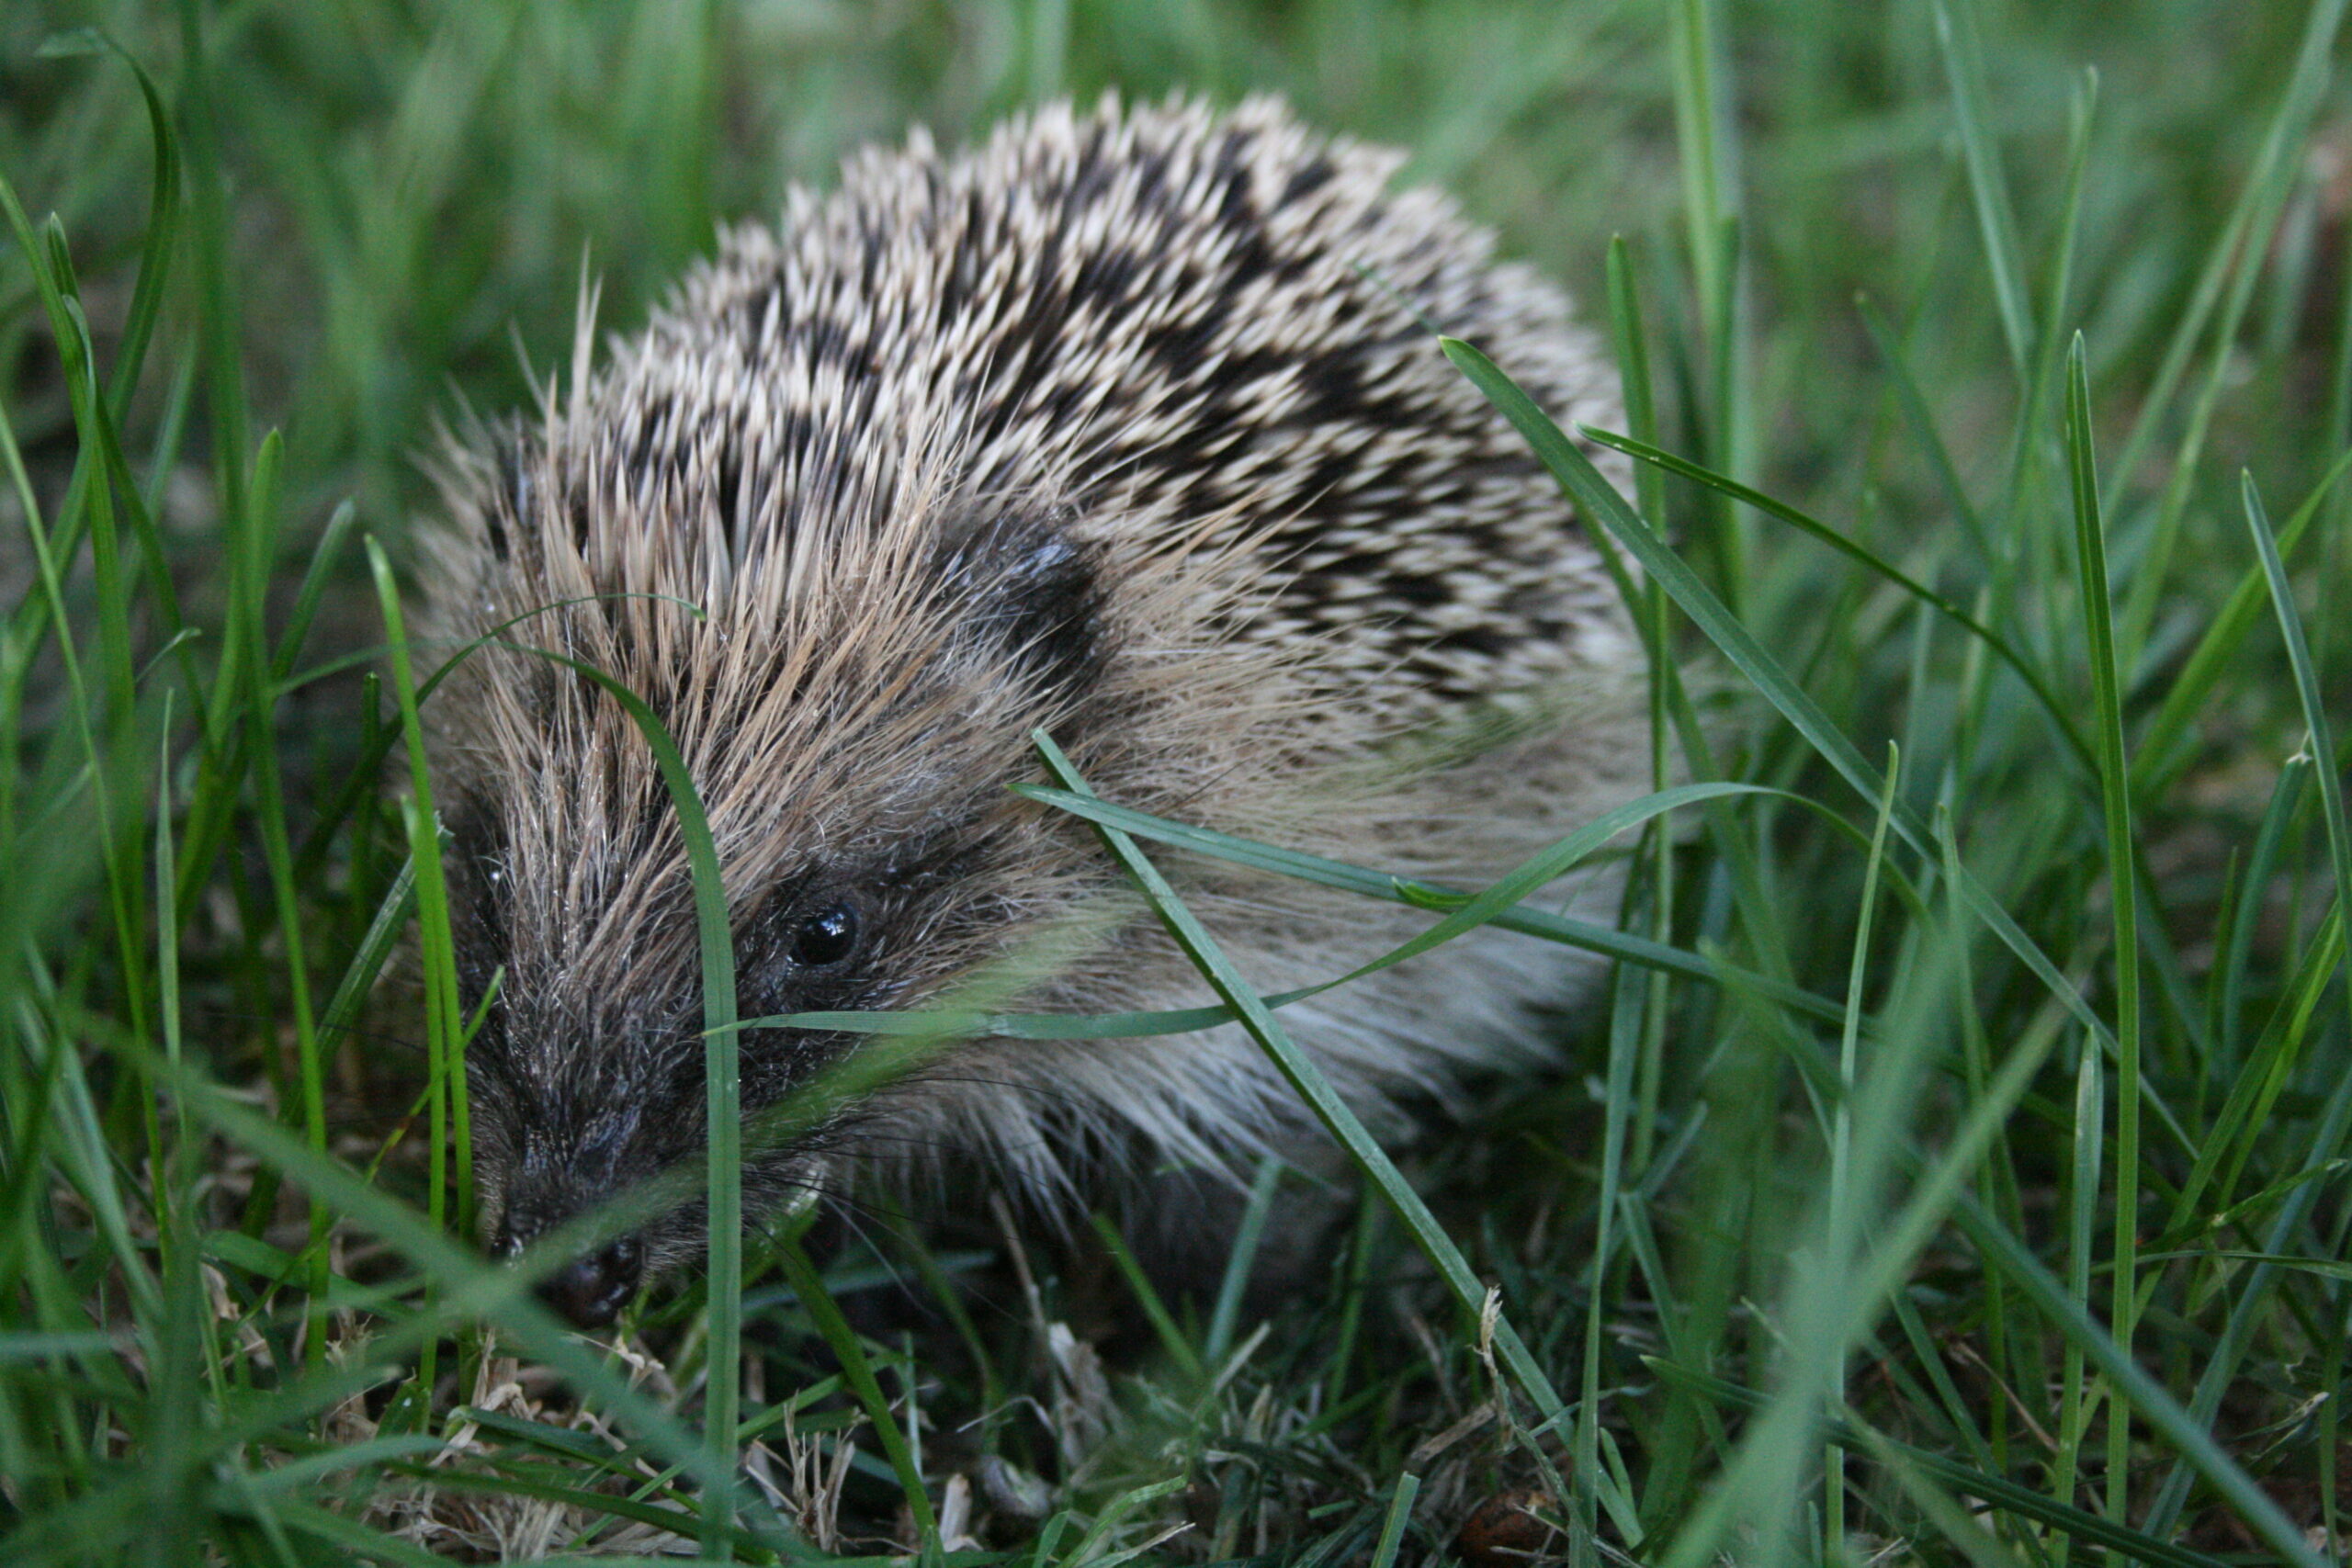 Close up photograph of a New Zealand Hedgehog walking through long grass.